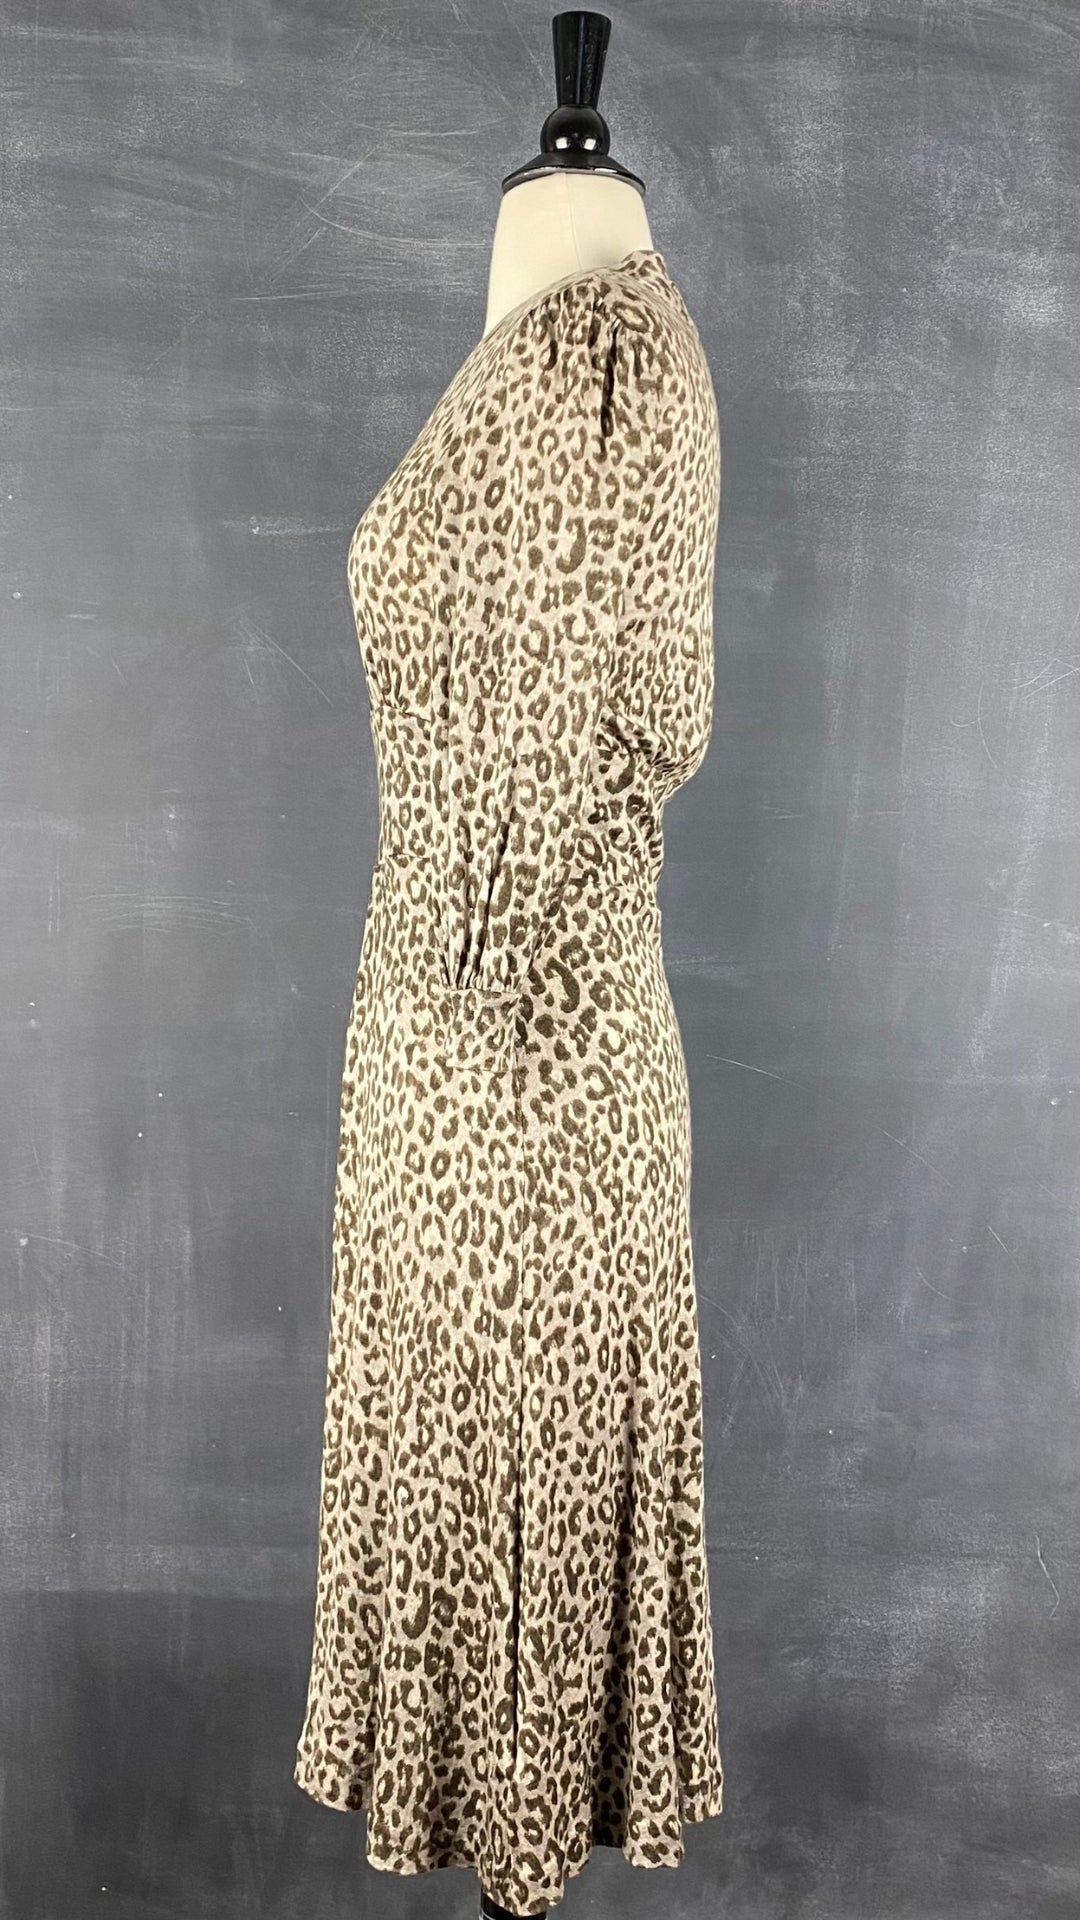 Robe en tricot fin et doux à motif léopard Banana Republic, taille xs-s. Vue de côté.